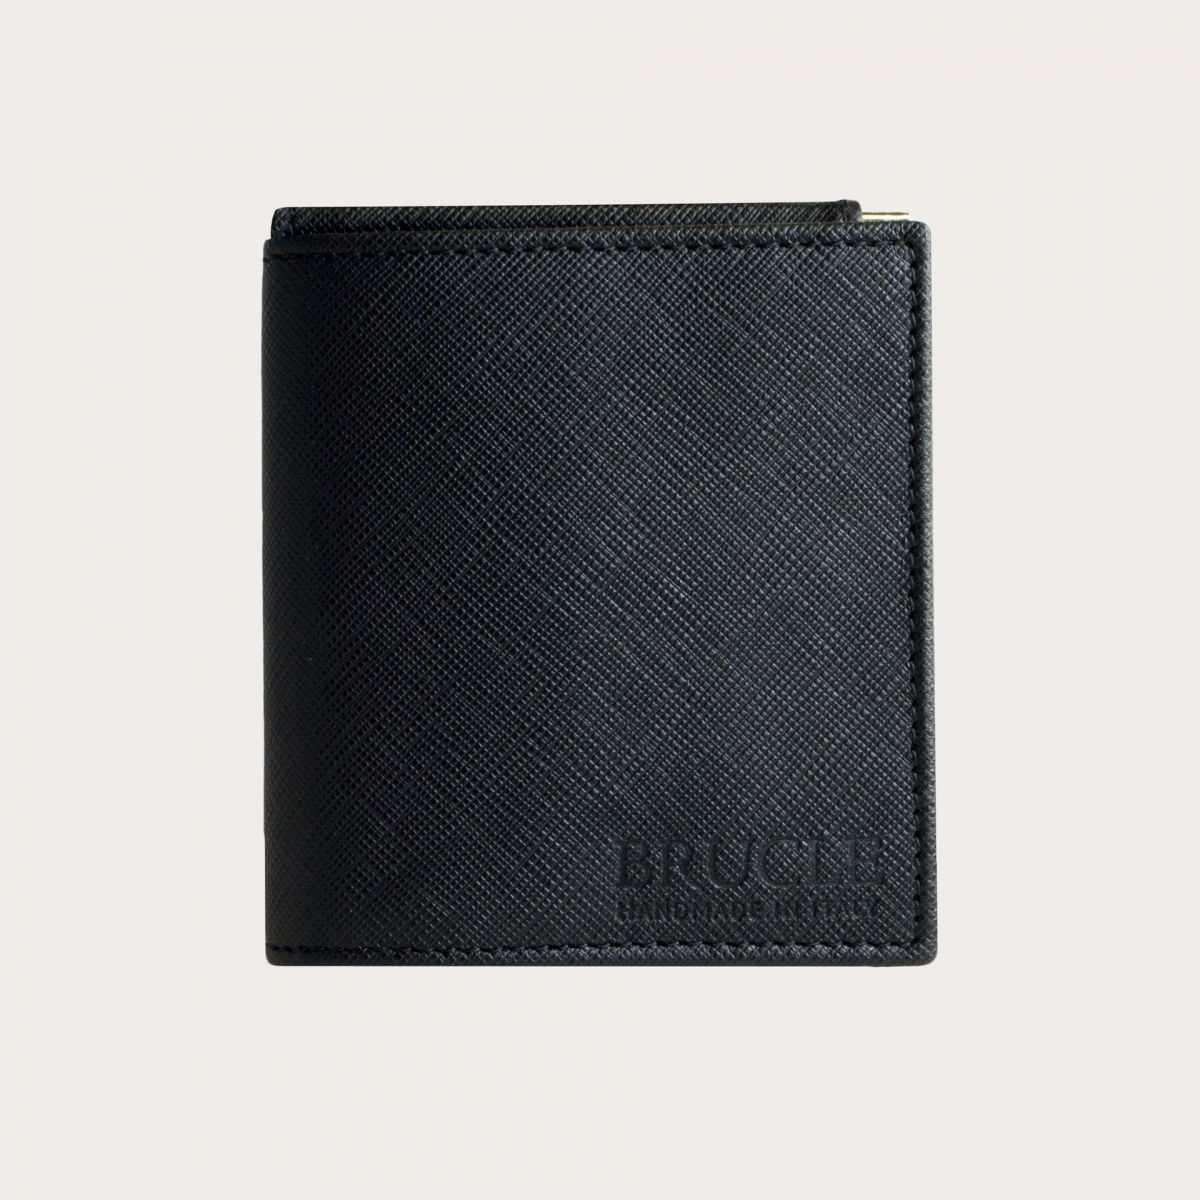 Kompakte Mini-Geldbörse aus Saffiano-Leder mit Geldscheinklammer und Geldbörse, schwarz